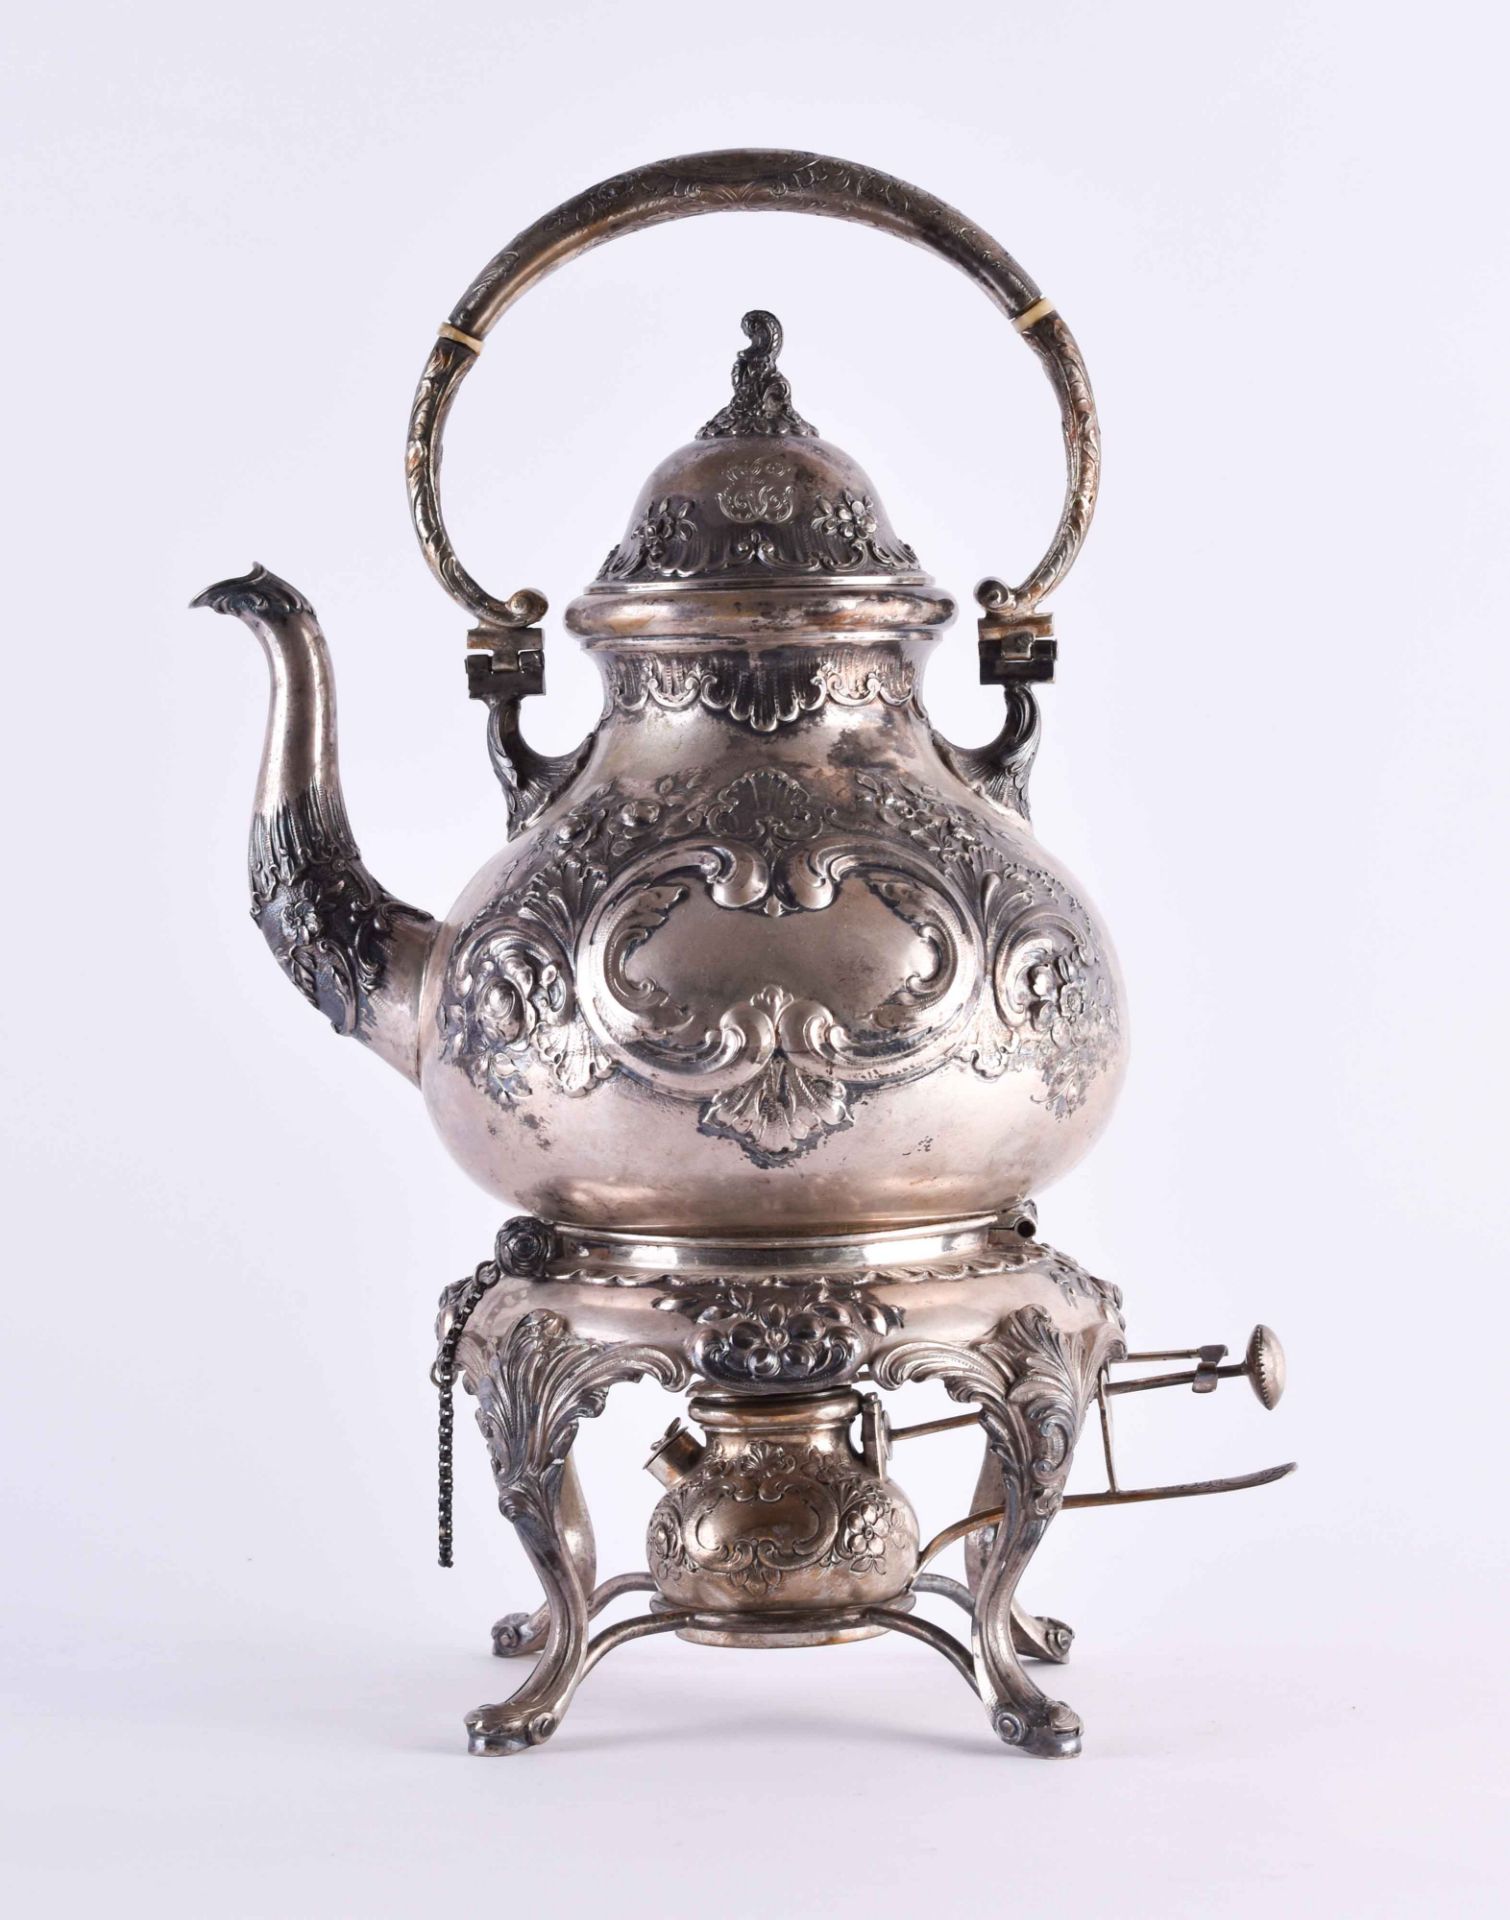 Tea kettle on rechaud, German around 1900